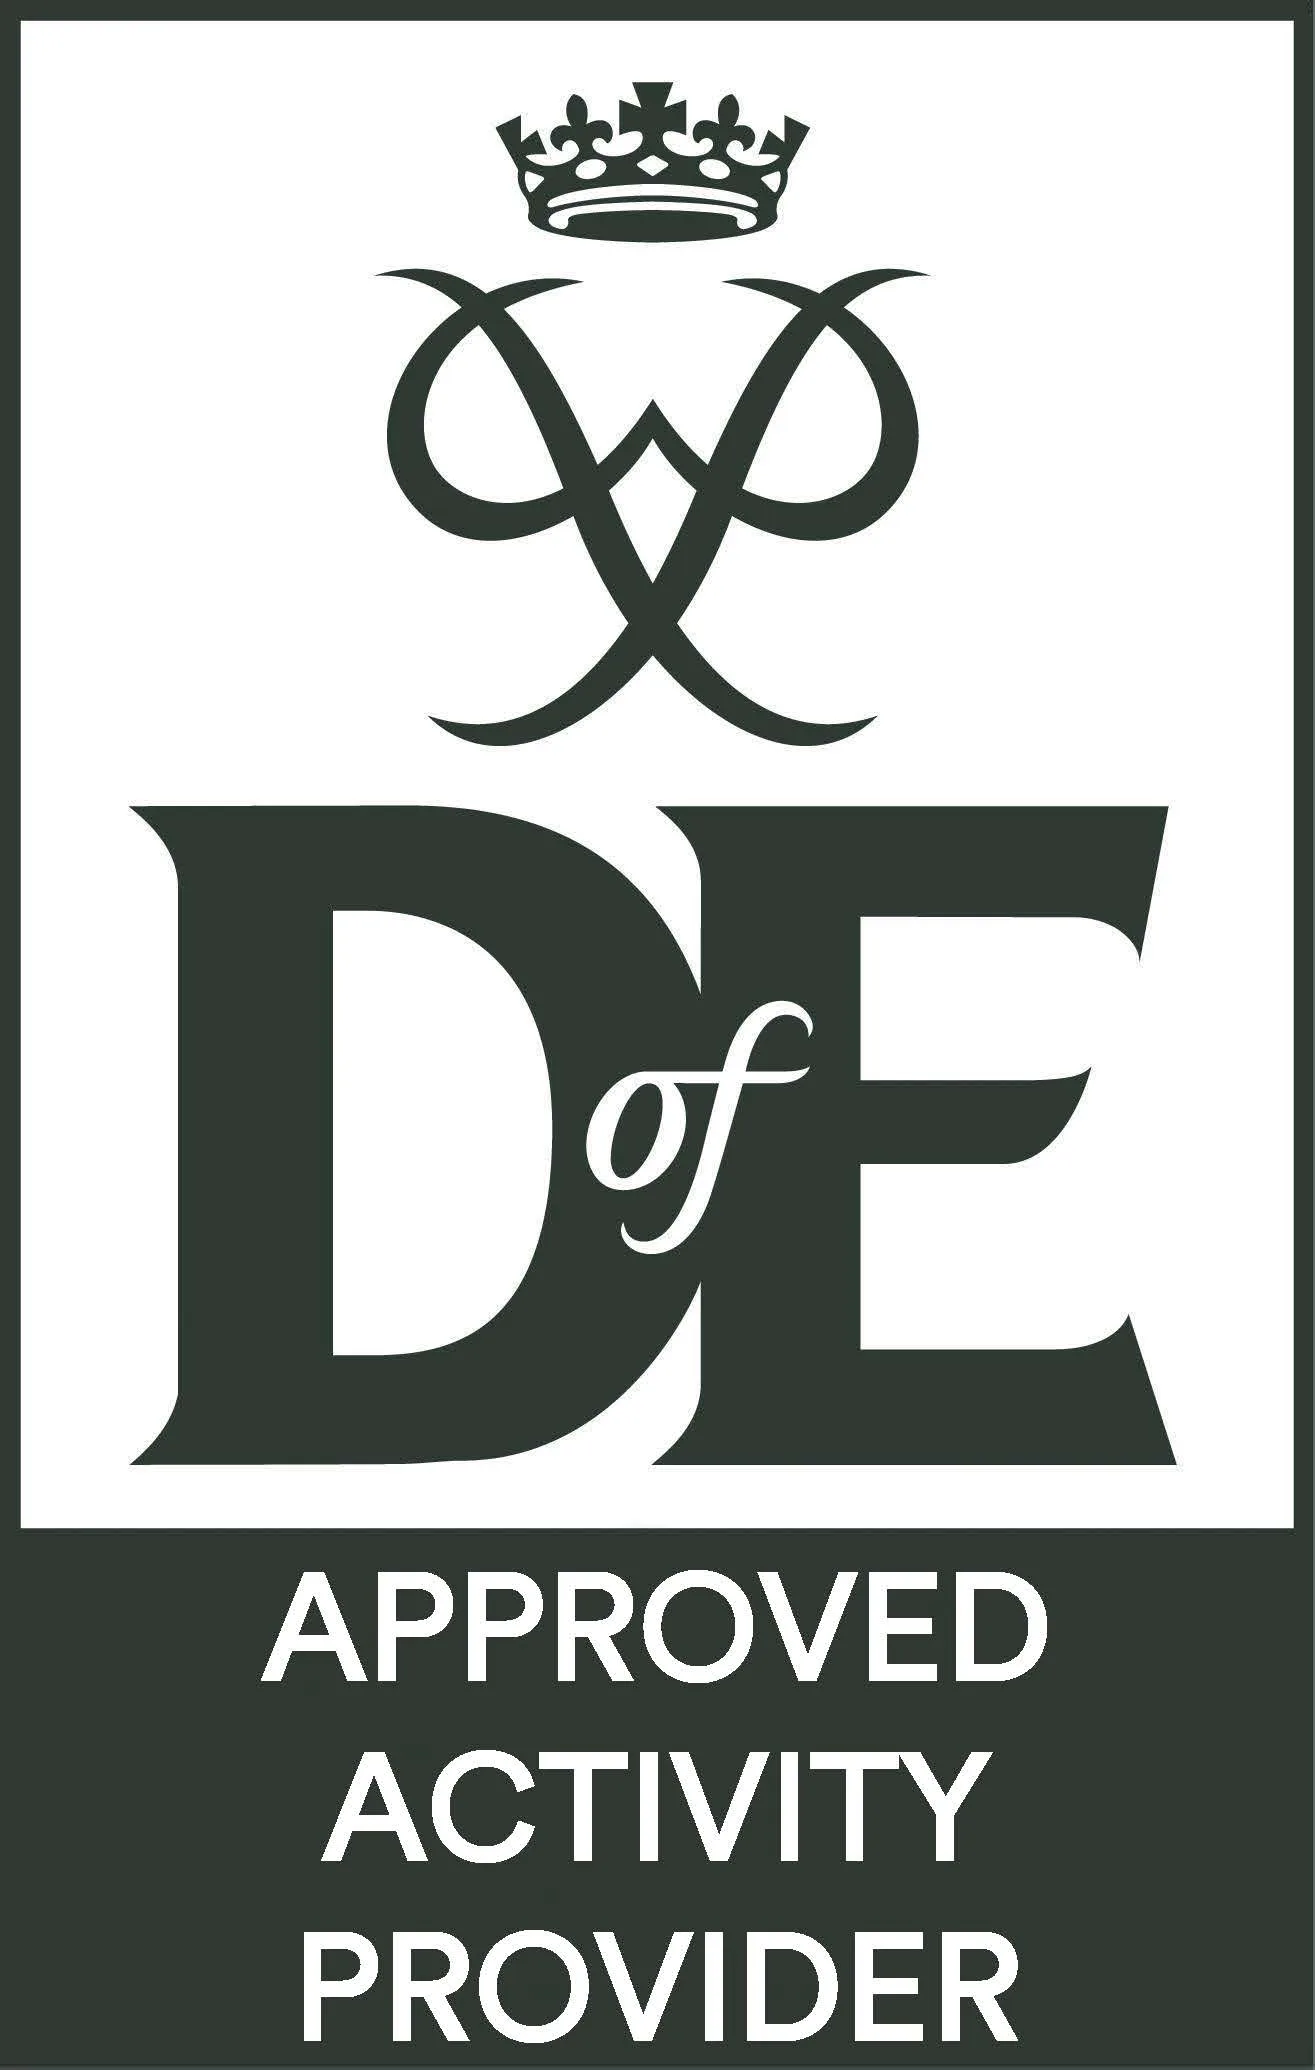 Approved activity provider for Duke of Edinburgh